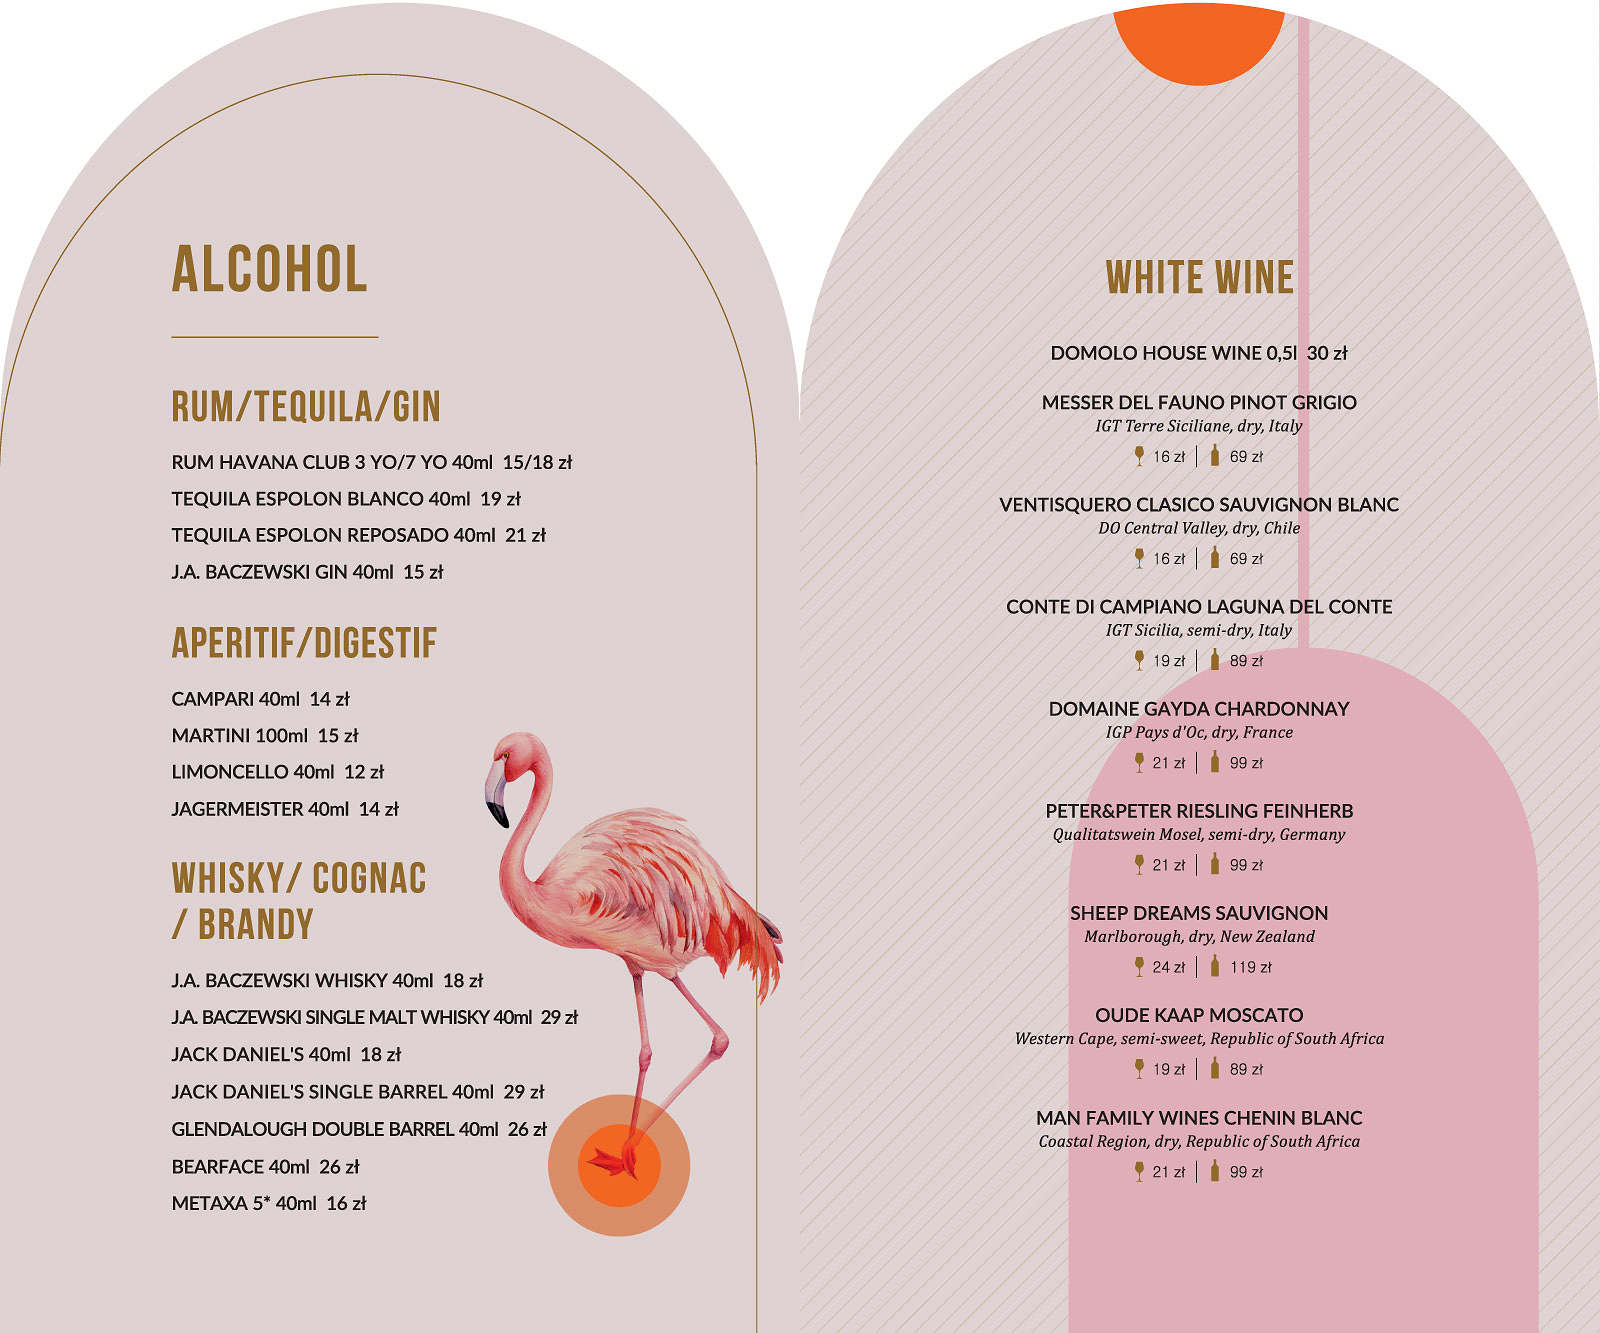 DOMOLO Alcohol, White Wine